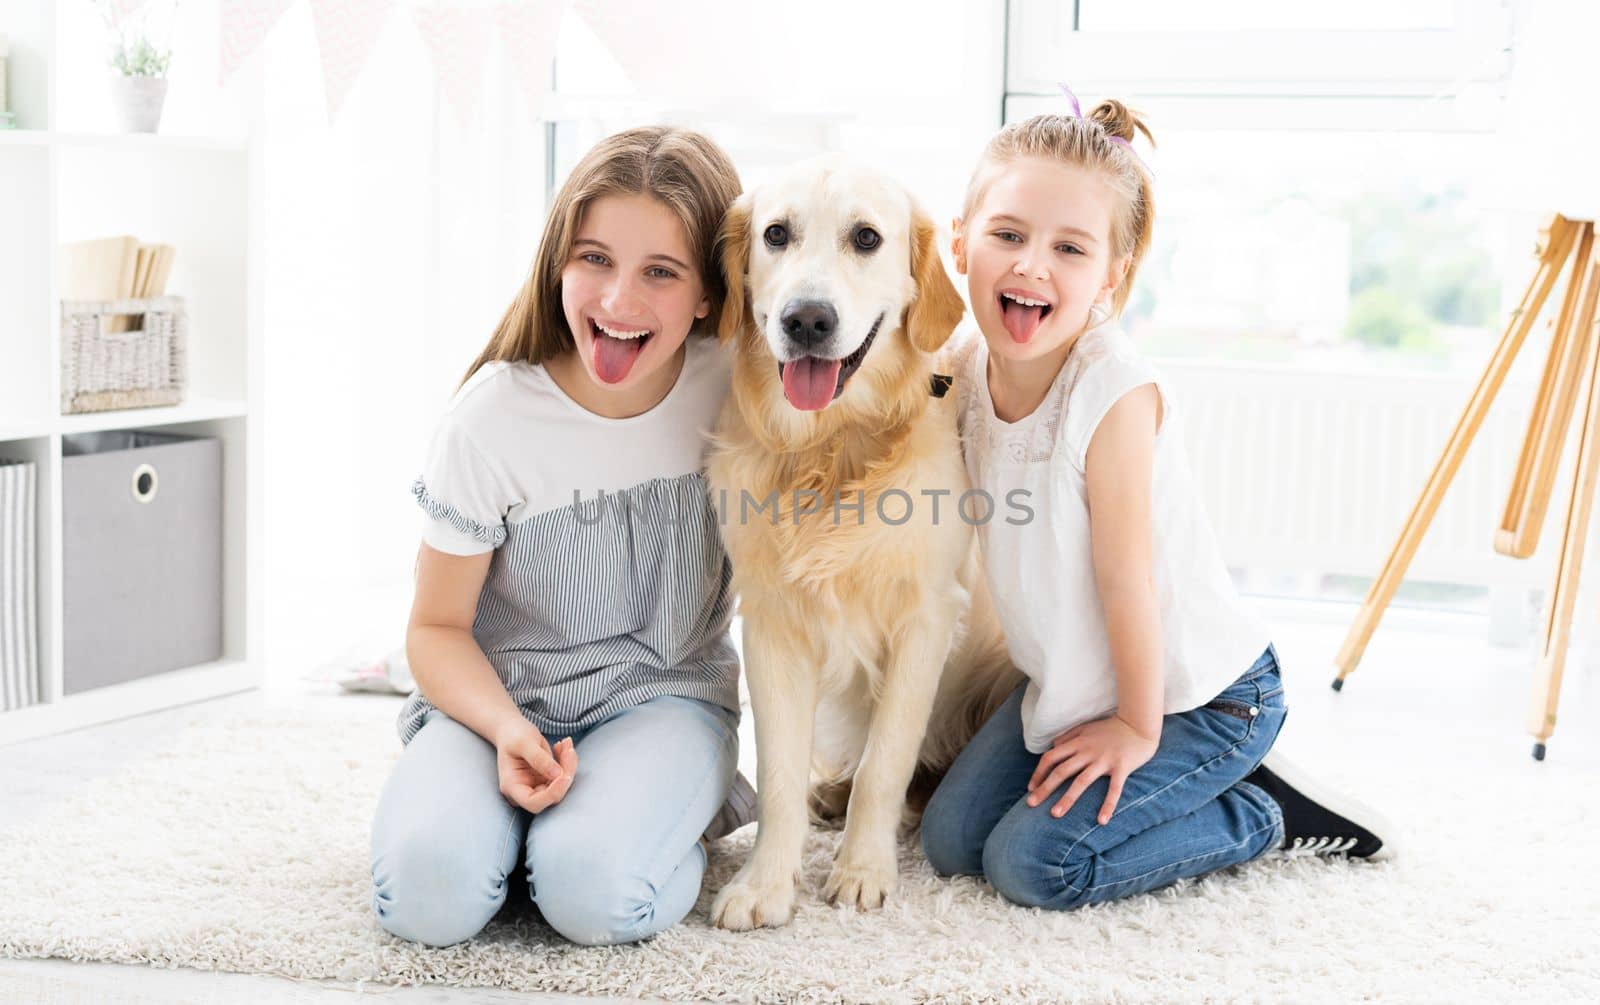 Smiling sisters with cute dog by GekaSkr